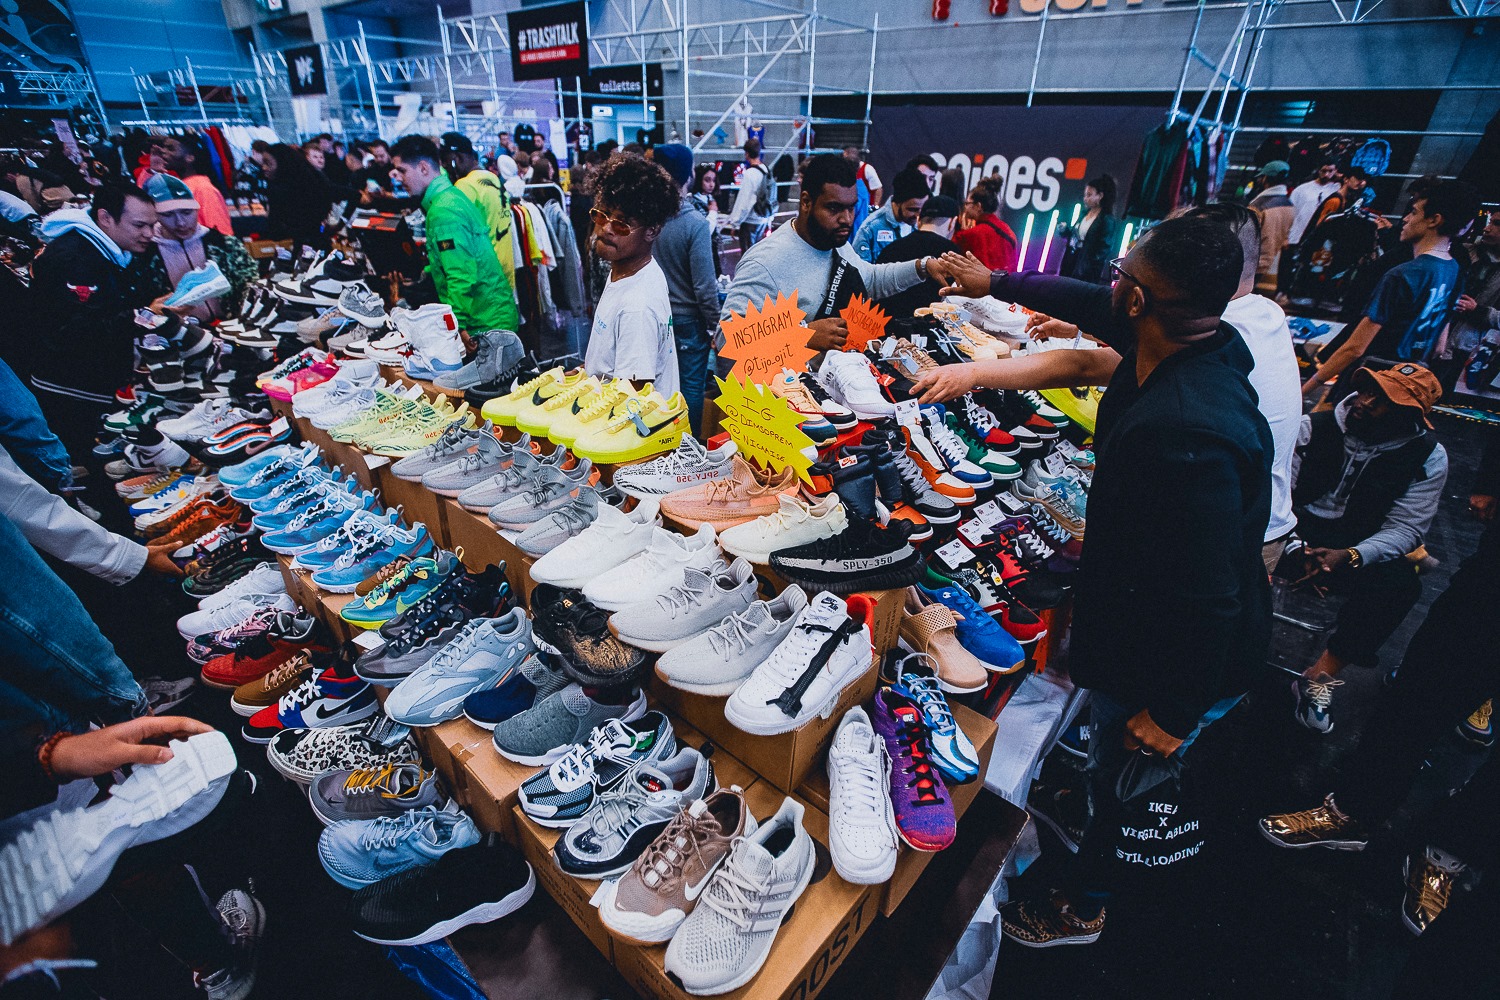 L'énorme salon Sneakers revient Paris en avril